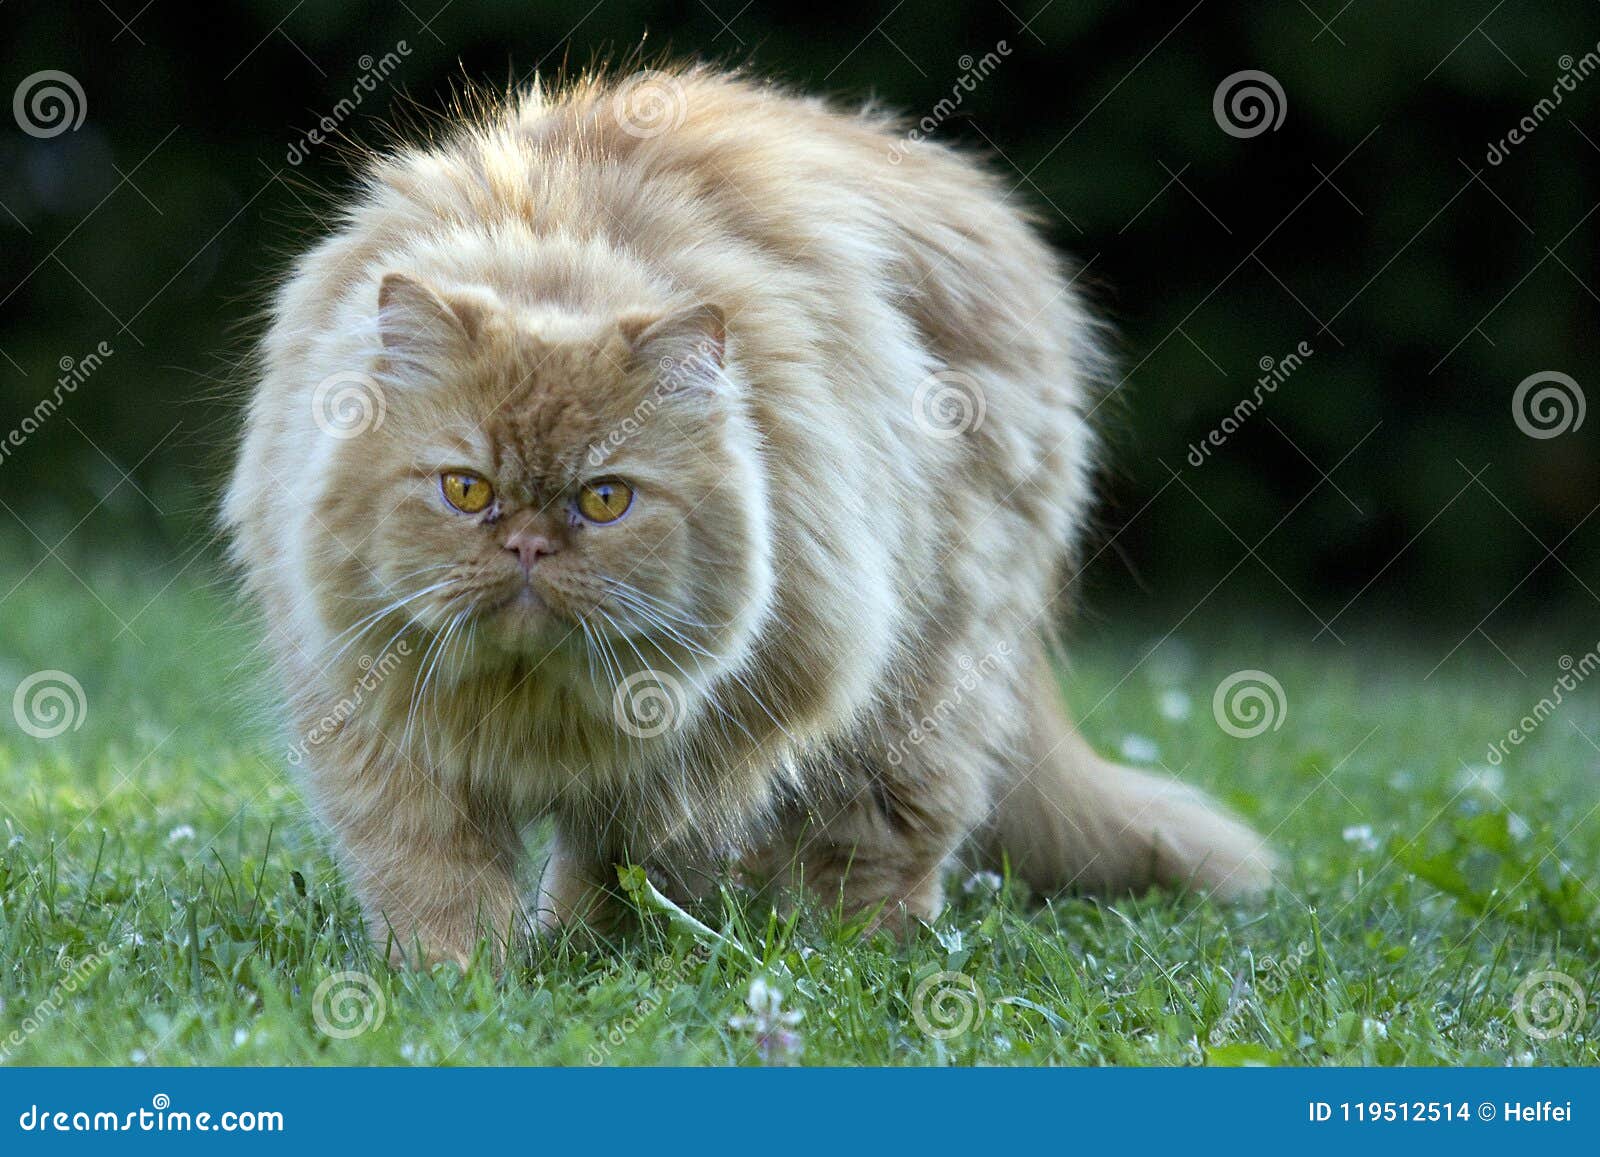 oldest persian cat